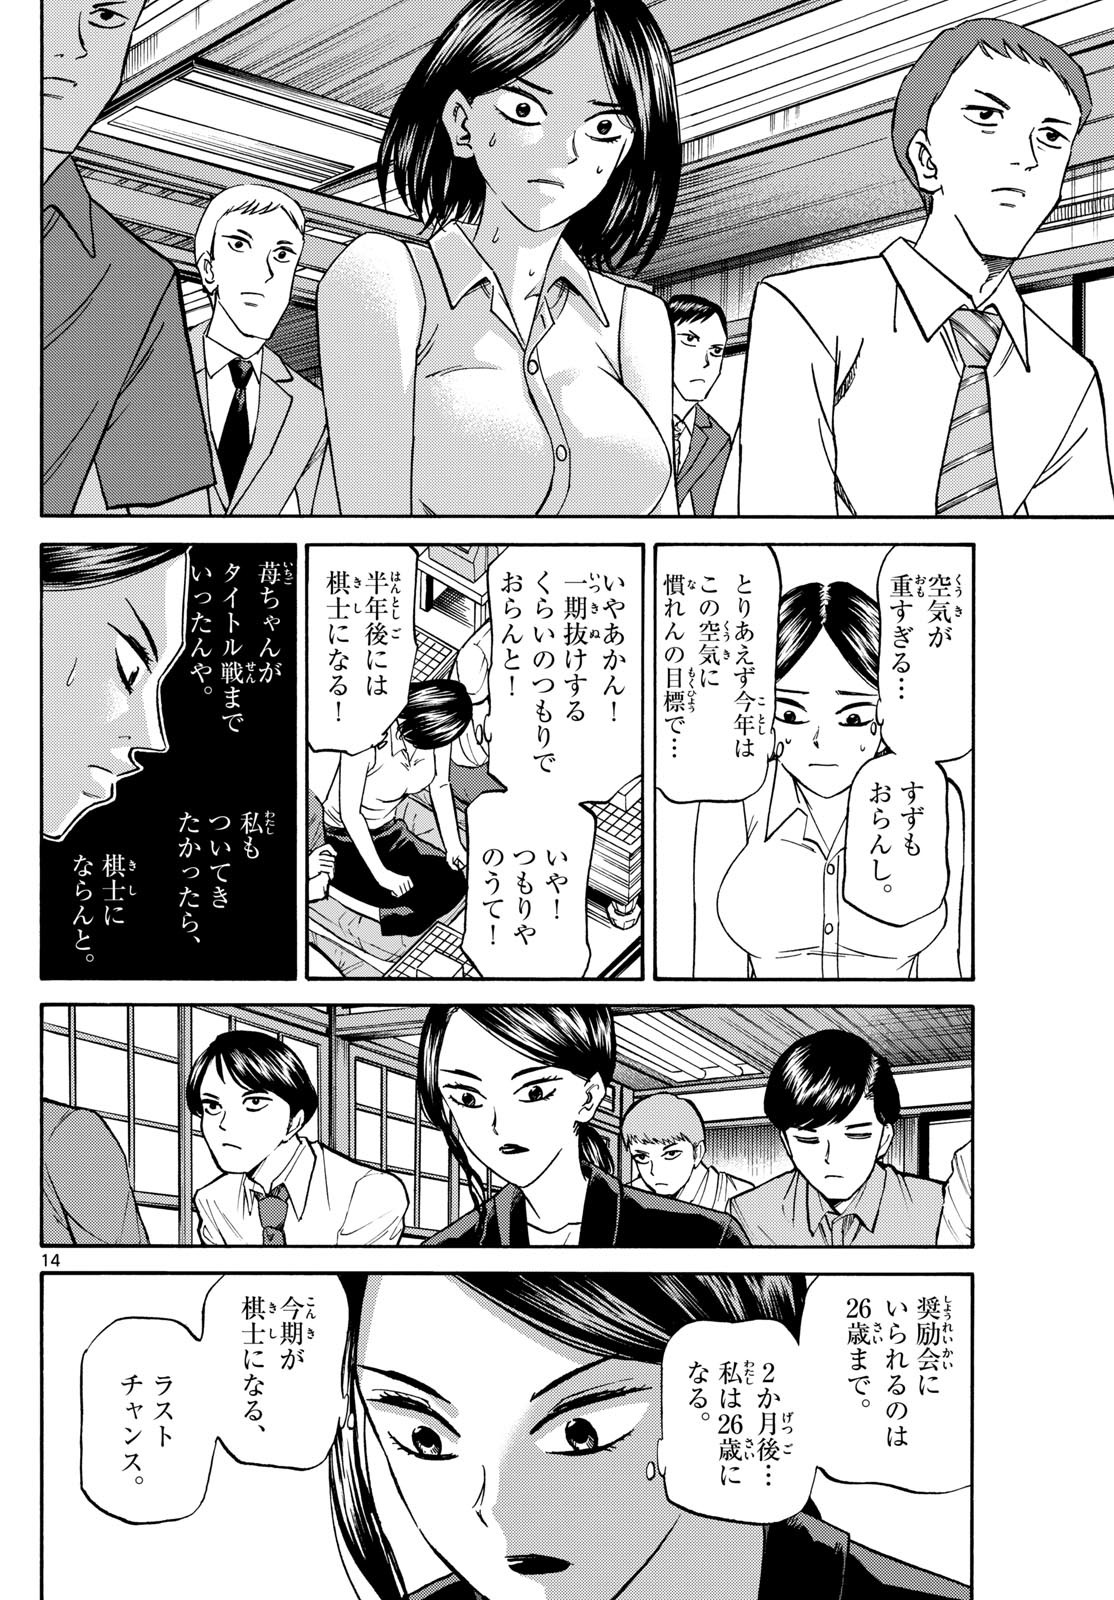 Ryu-to-Ichigo - Chapter 152 - Page 14